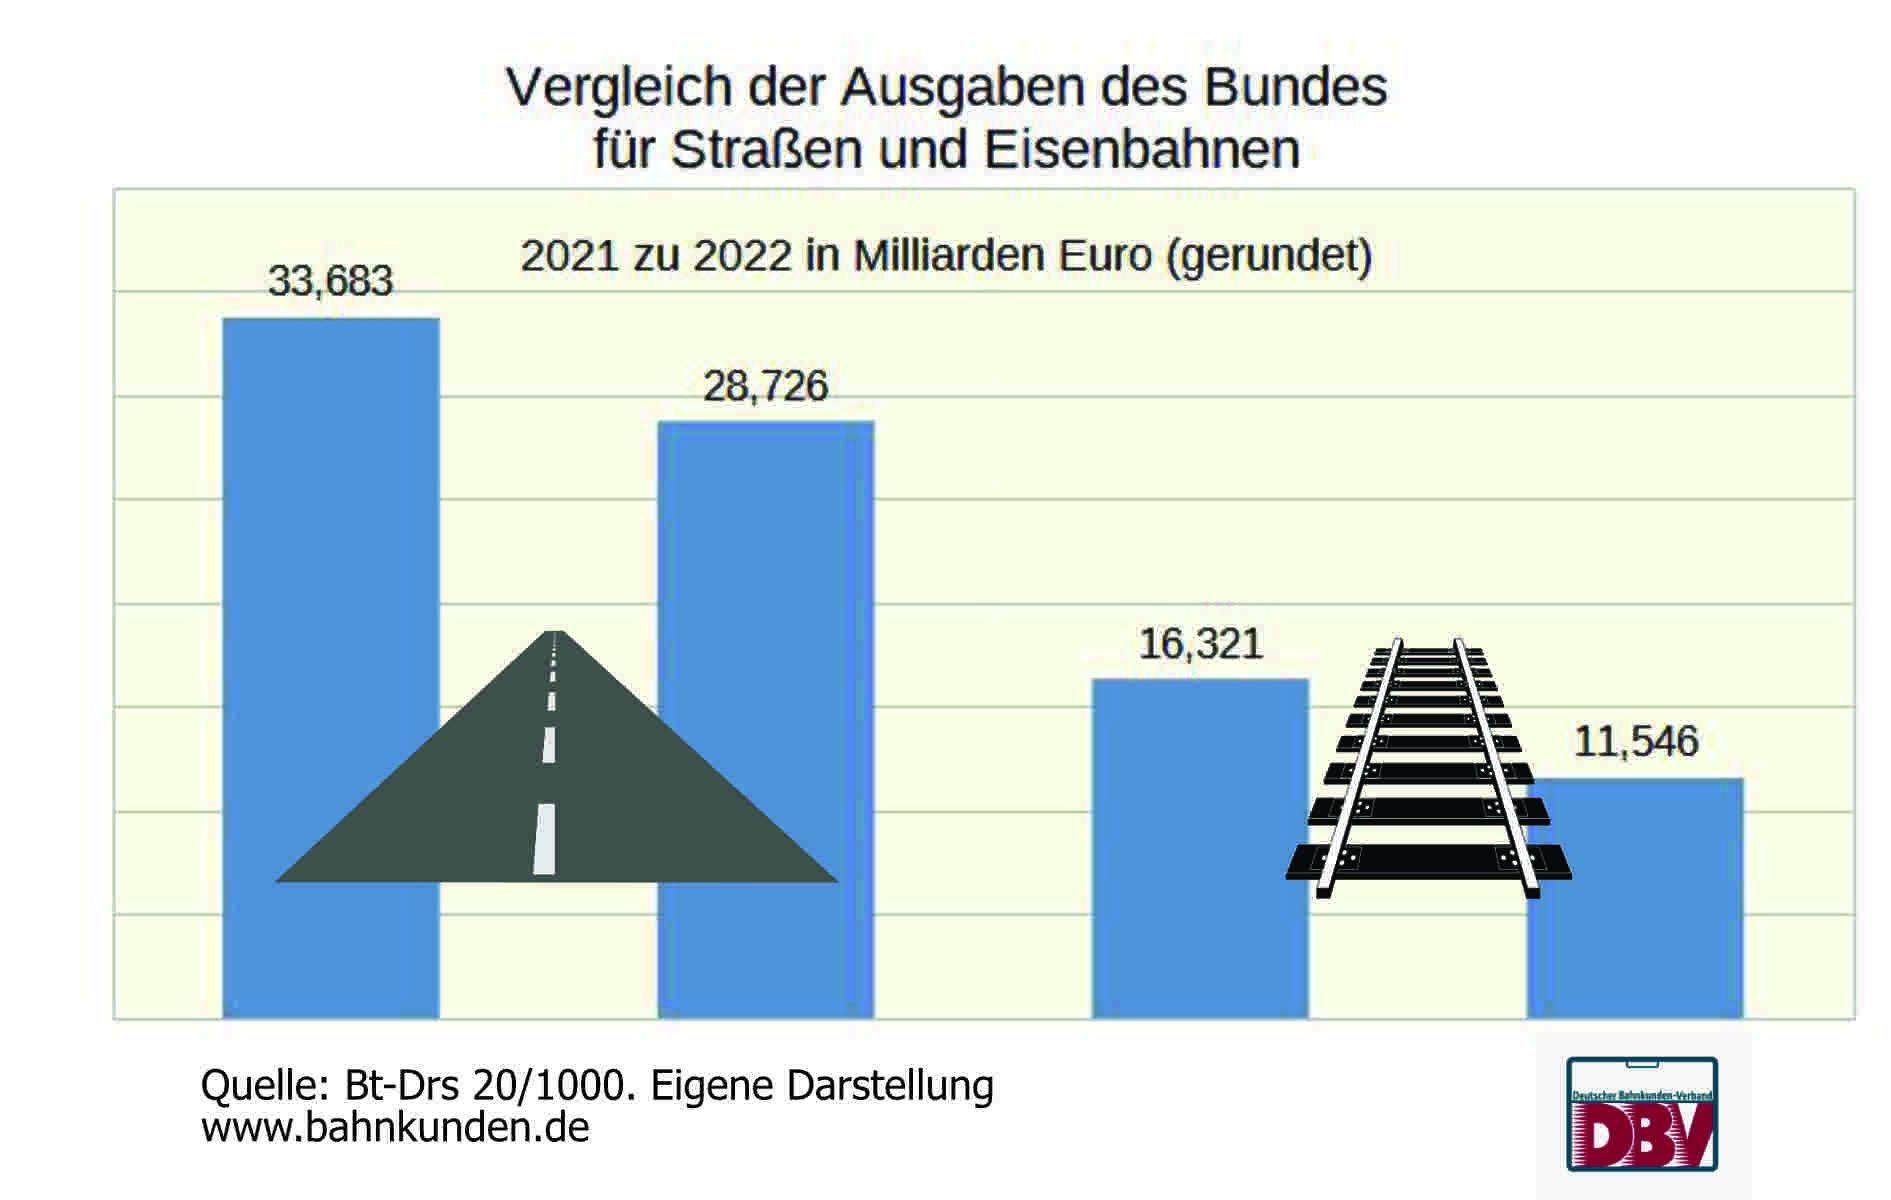 Balkendiagramm. Ausgaben für Straßen -327,087 Mio. Euro, Eisenbahnen - 4,777,873 Mio.Euro weniger